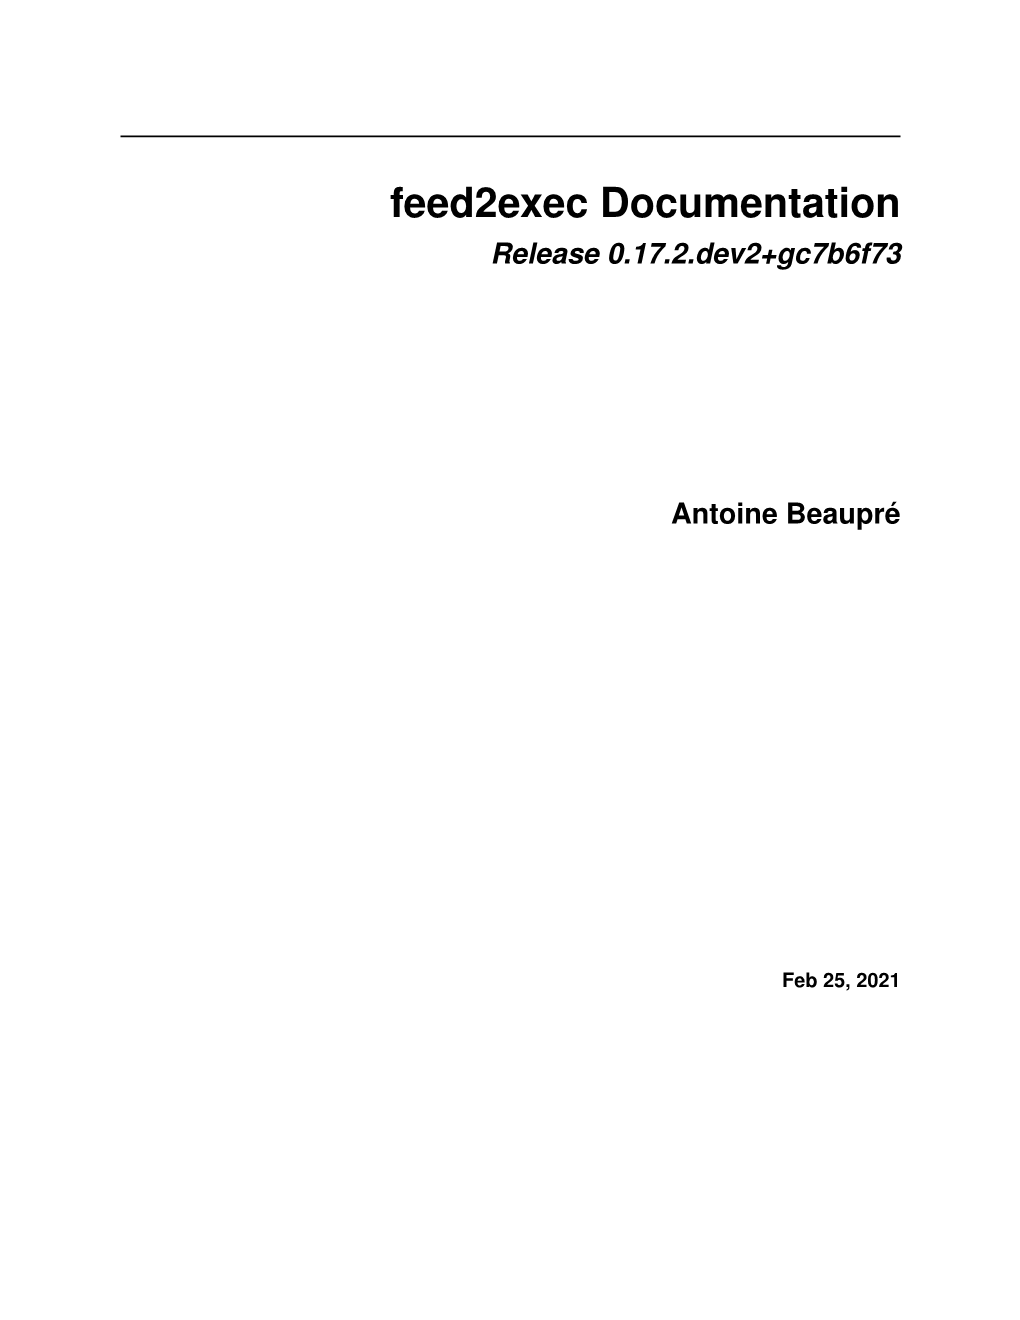 Feed2exec Documentation Release 0.17.2.Dev2+Gc7b6f73